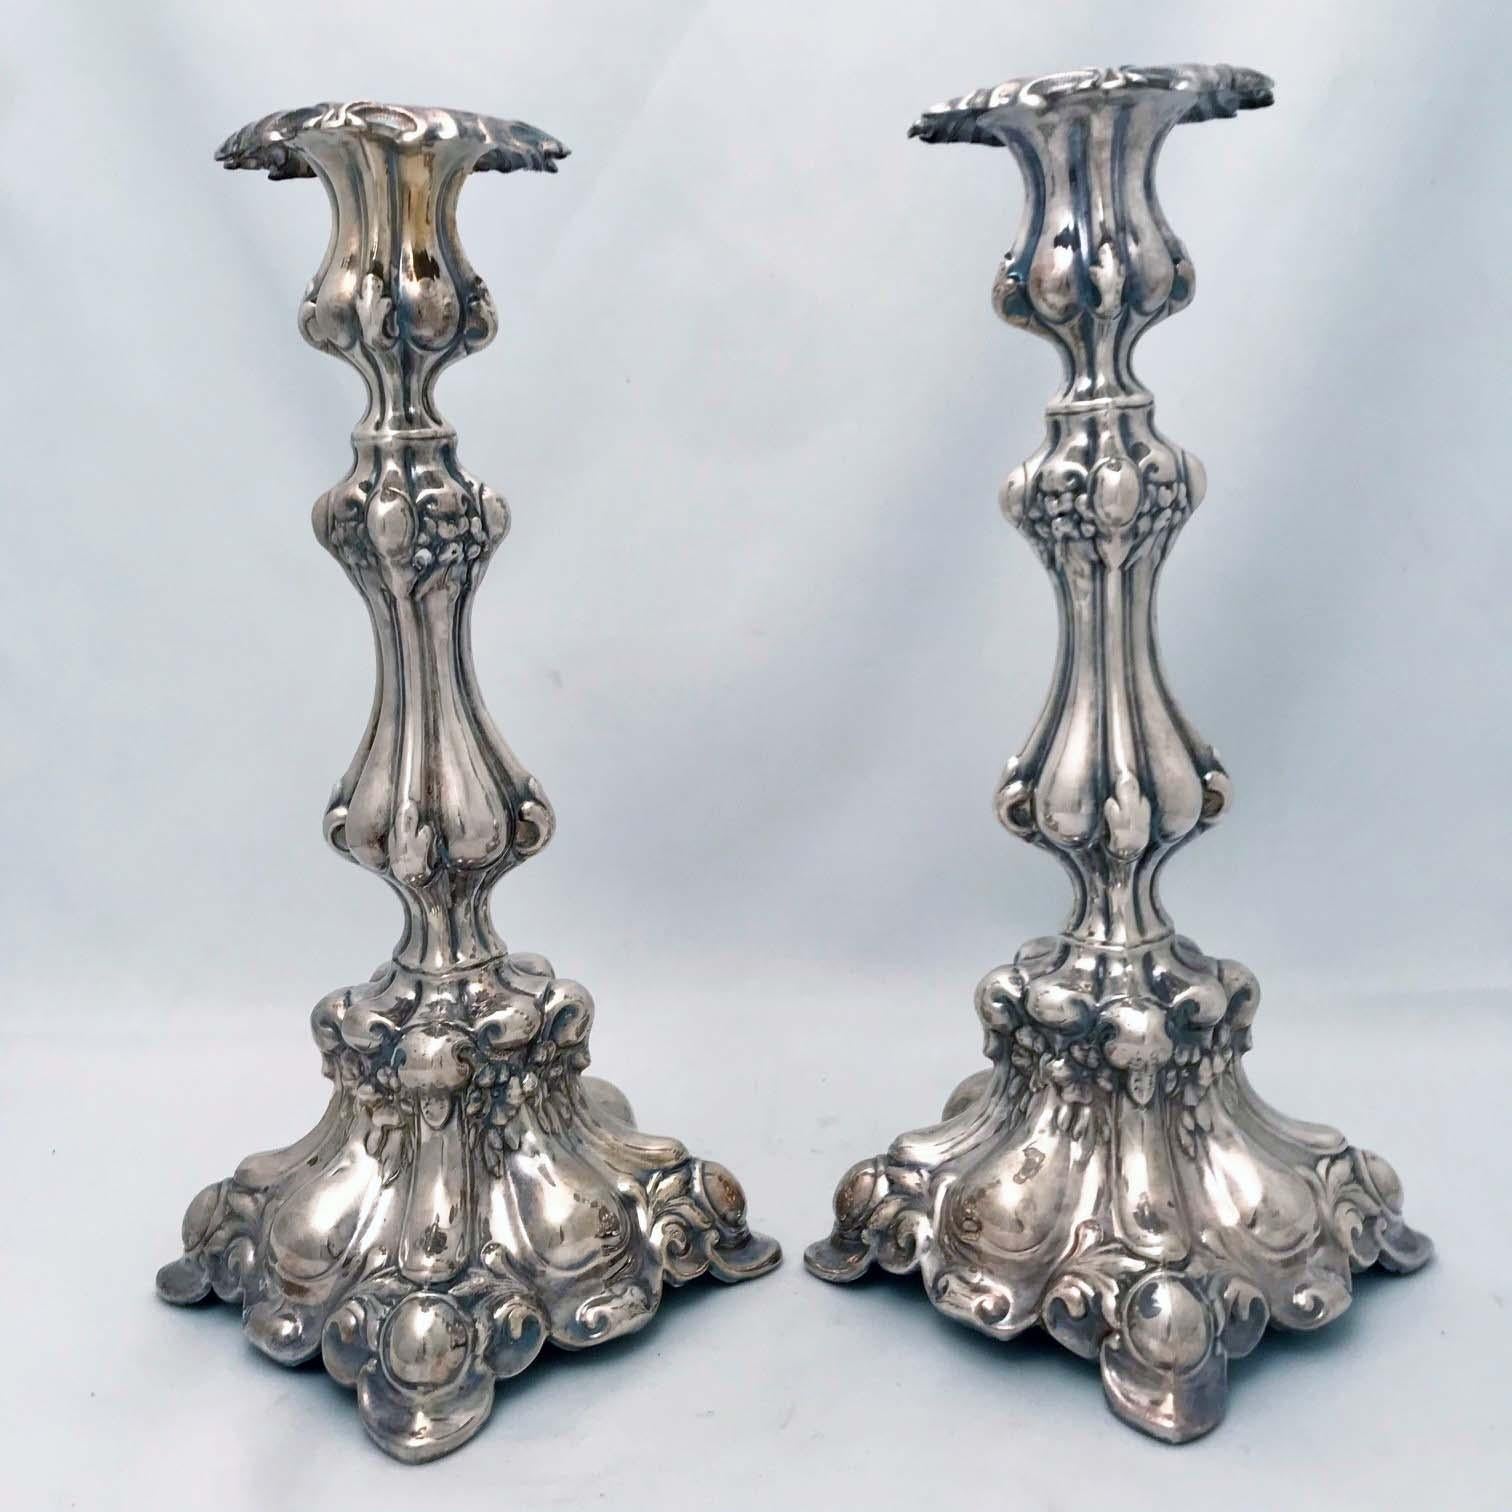 Ces chandeliers polonais sont dans le goût baroque, vigoureusement modelés et audacieusement conçus. Il s'agissait à l'origine de chandeliers de sabbat, mais ils pourraient très bien être utilisés.  à des fins laïques par des Gentils également. La